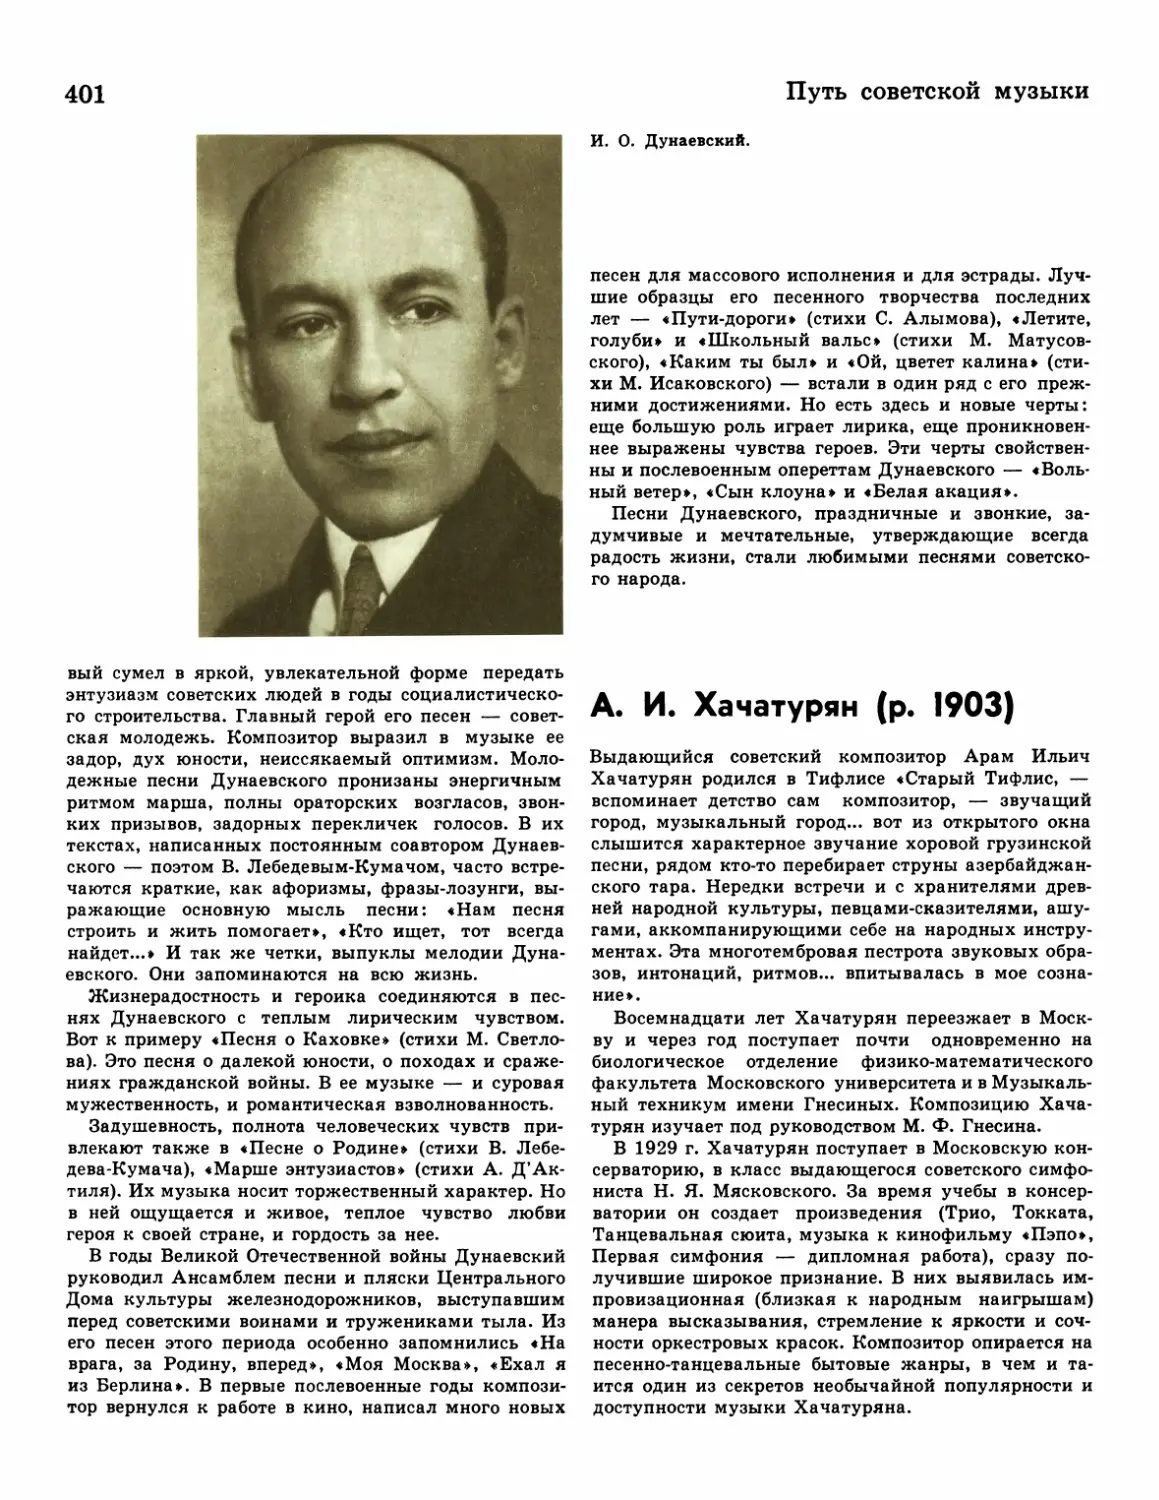 А.И.Хачатурян